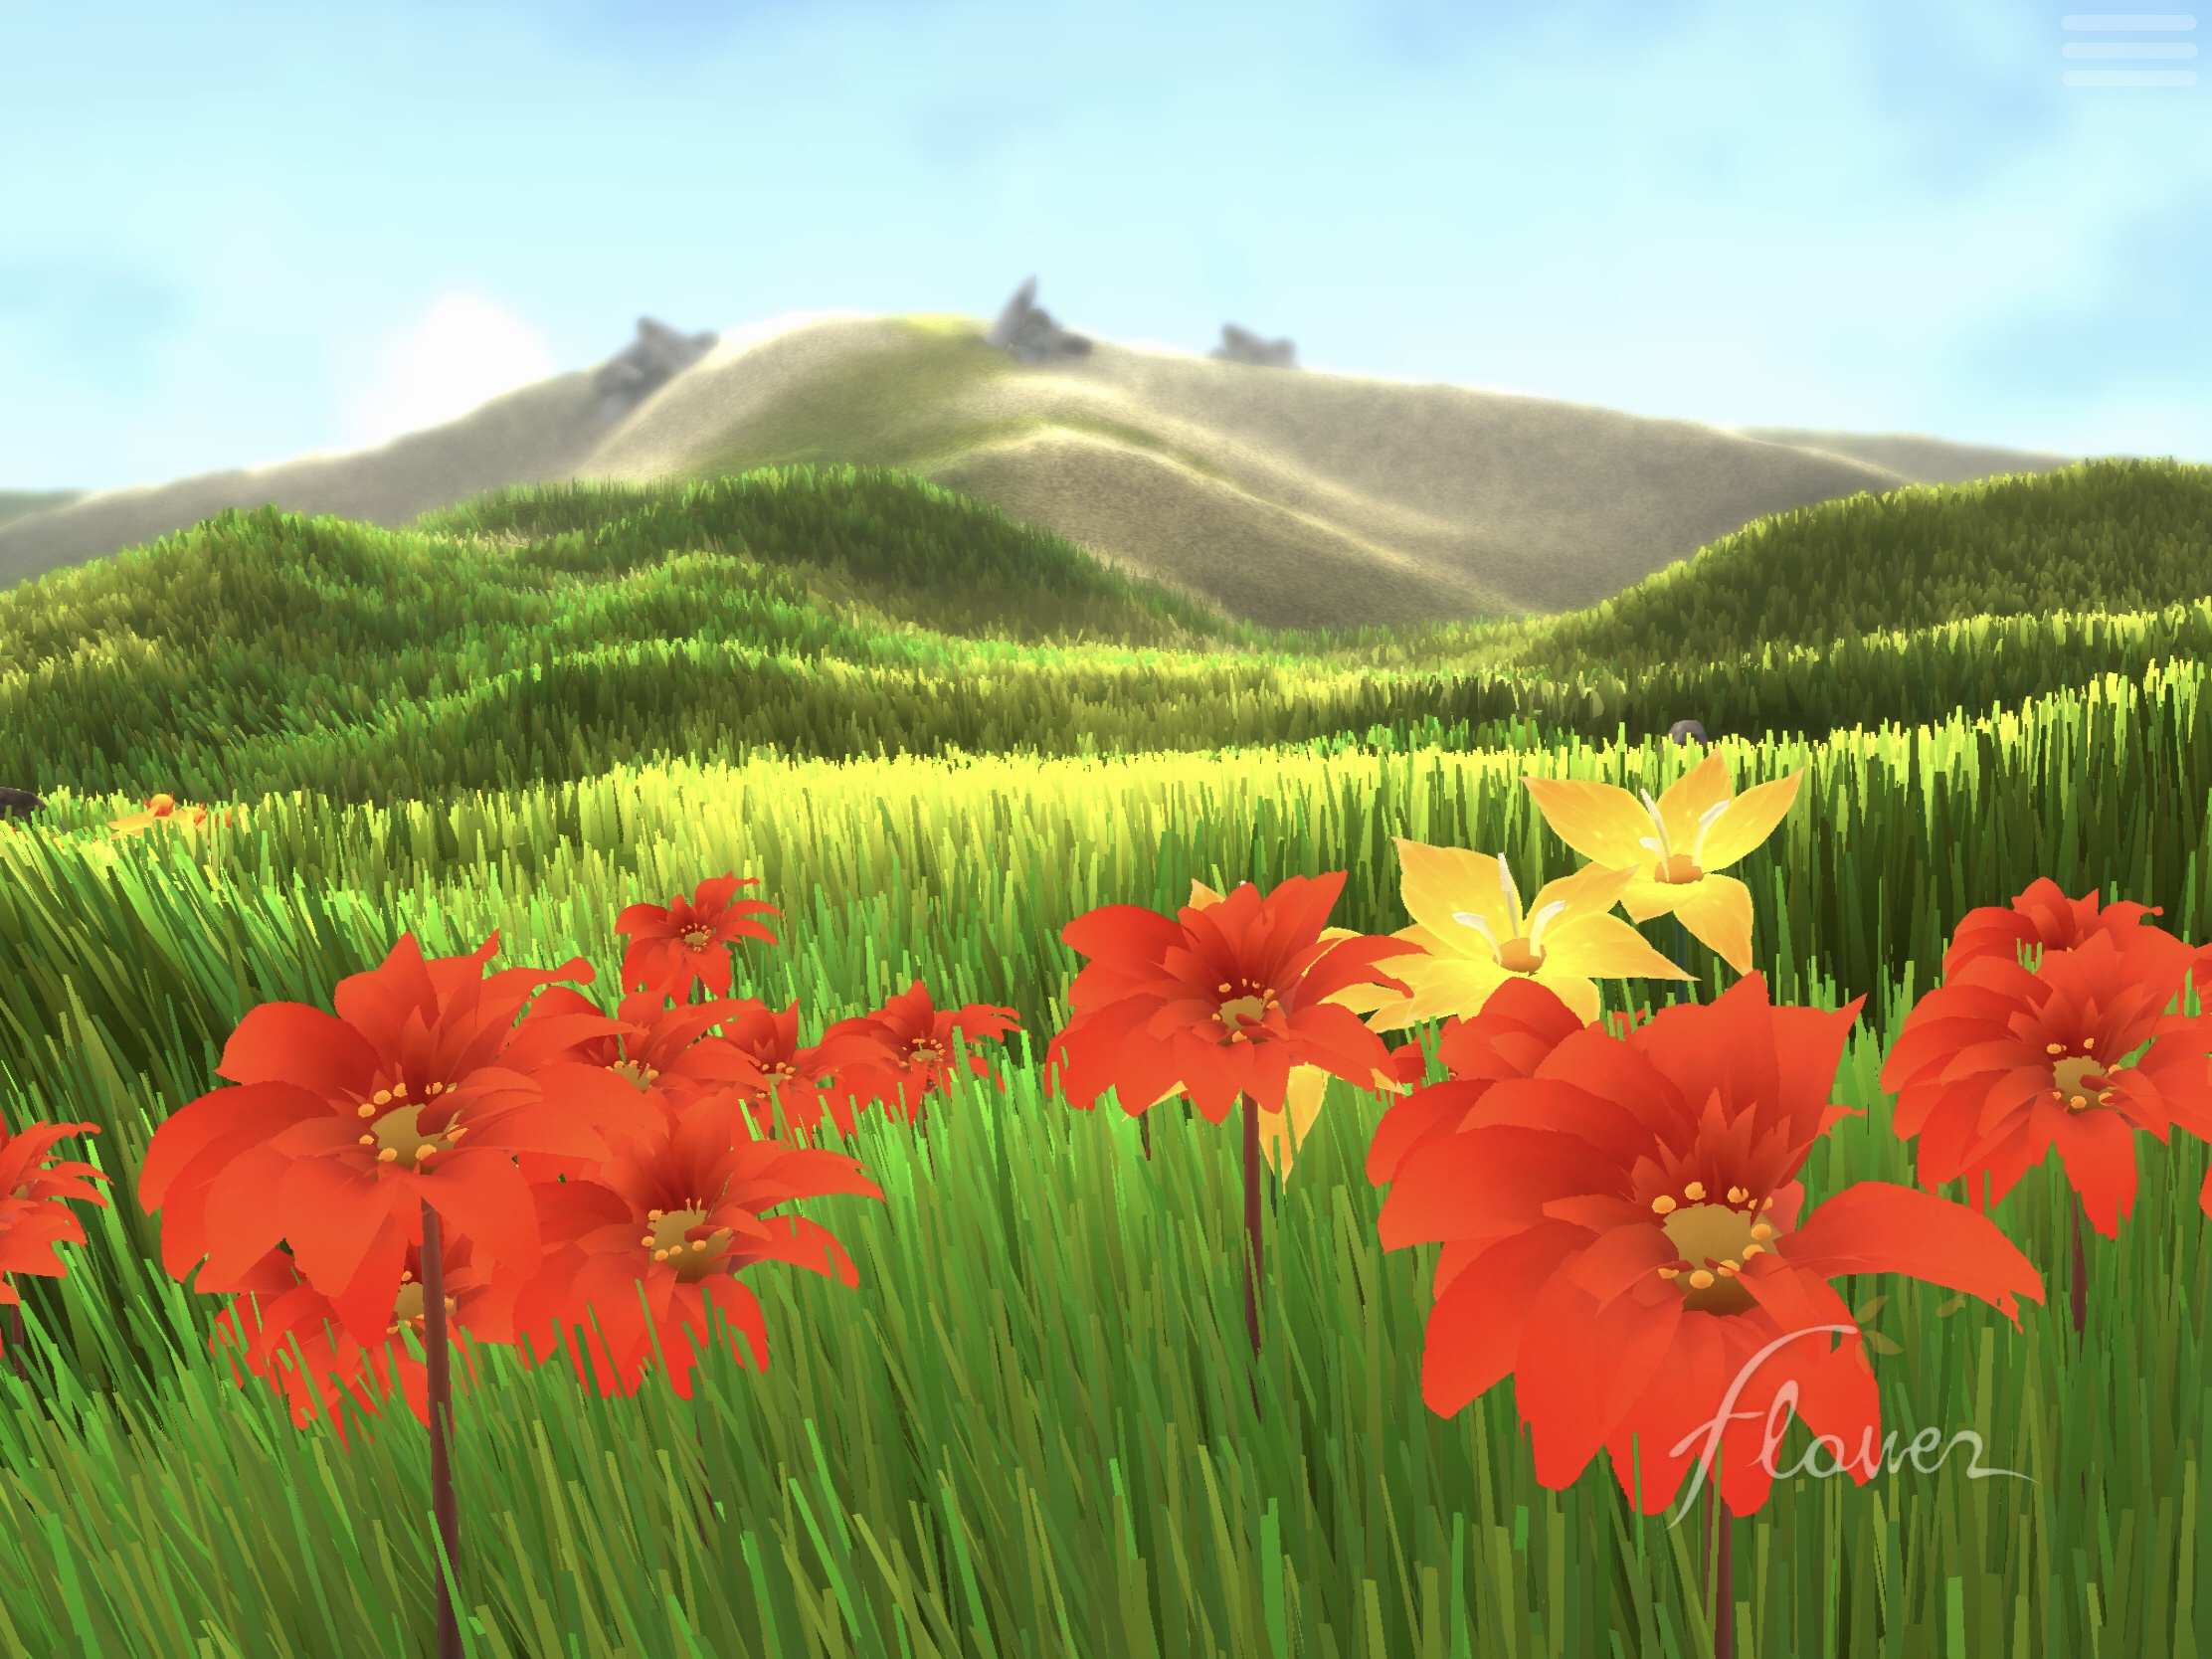 最高に癒される世界観 Ios有料ゲームアプリ Flower プレイレビュー 感想 もりのゲームブログ